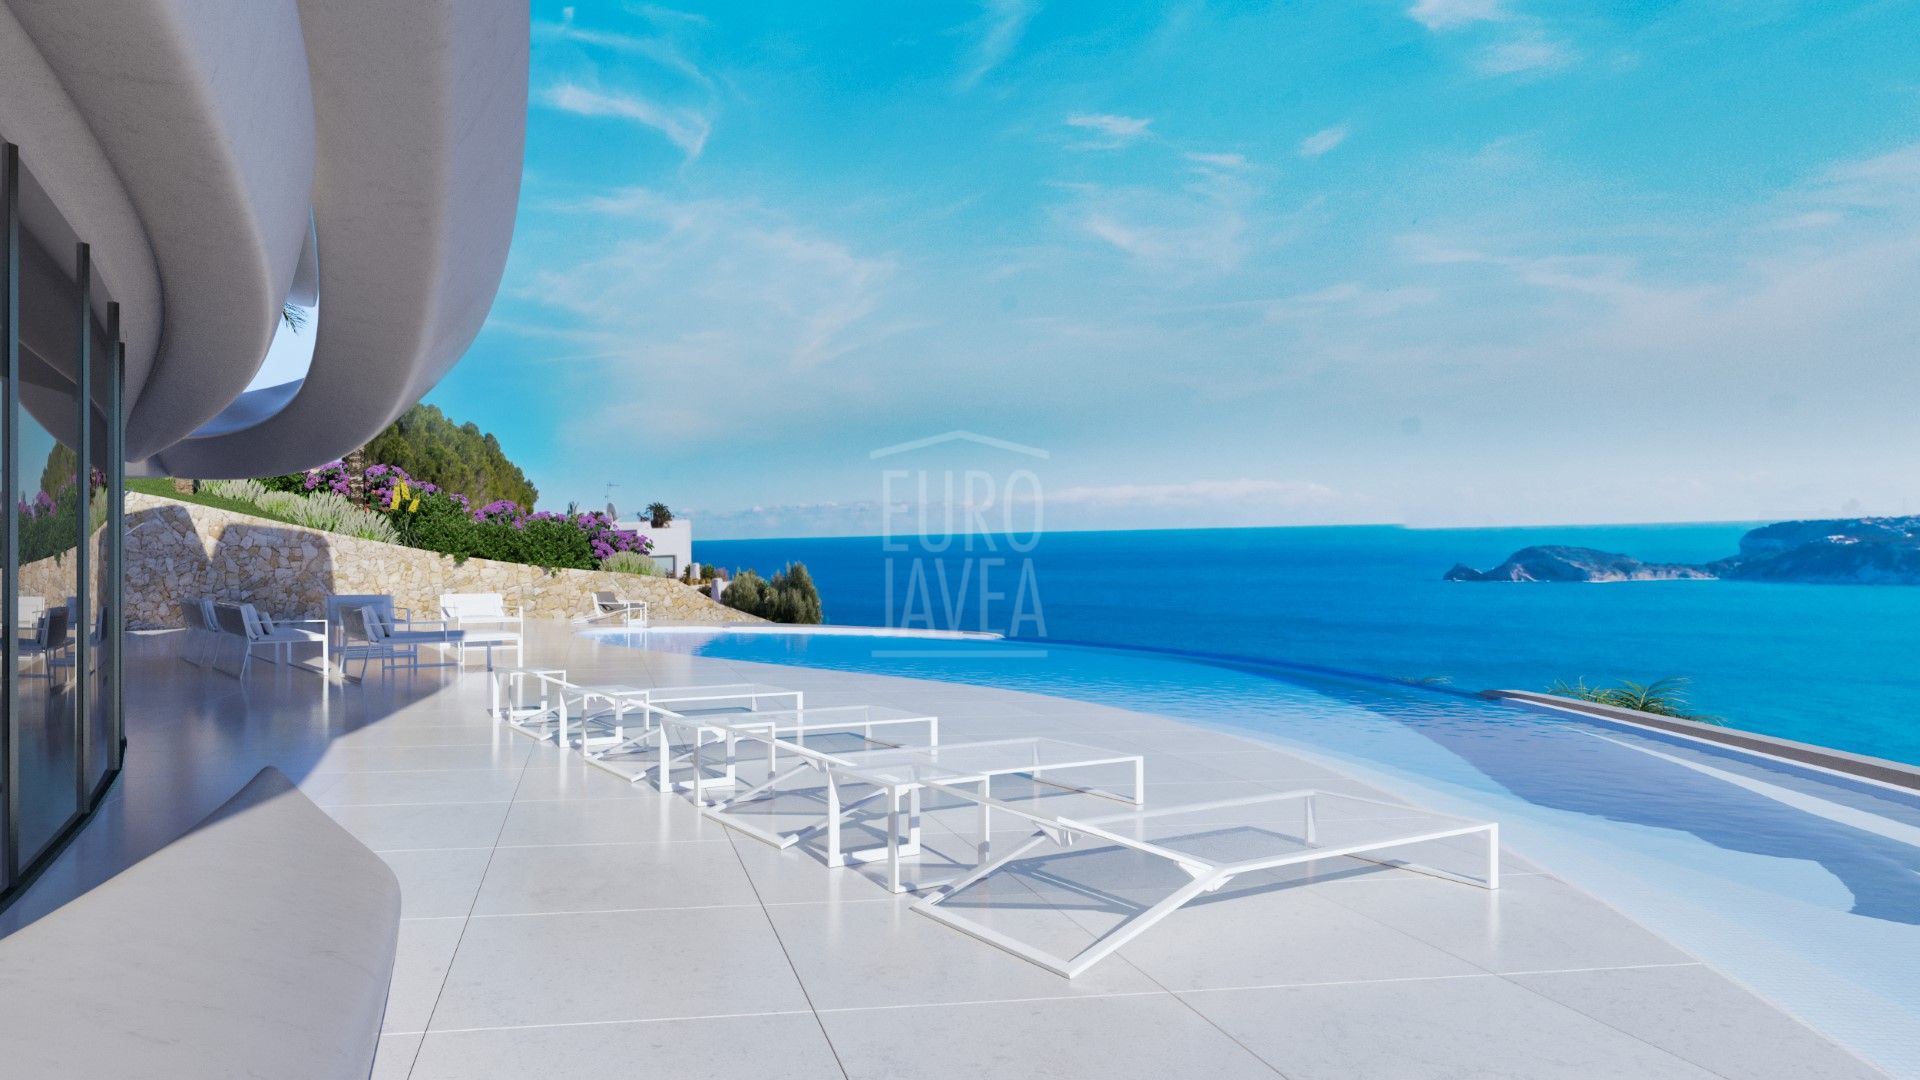 Nuevo proyecto de villa en Jávea, en la prestigiosa urbanizacion de La Corona con espectaculares vistas al mar